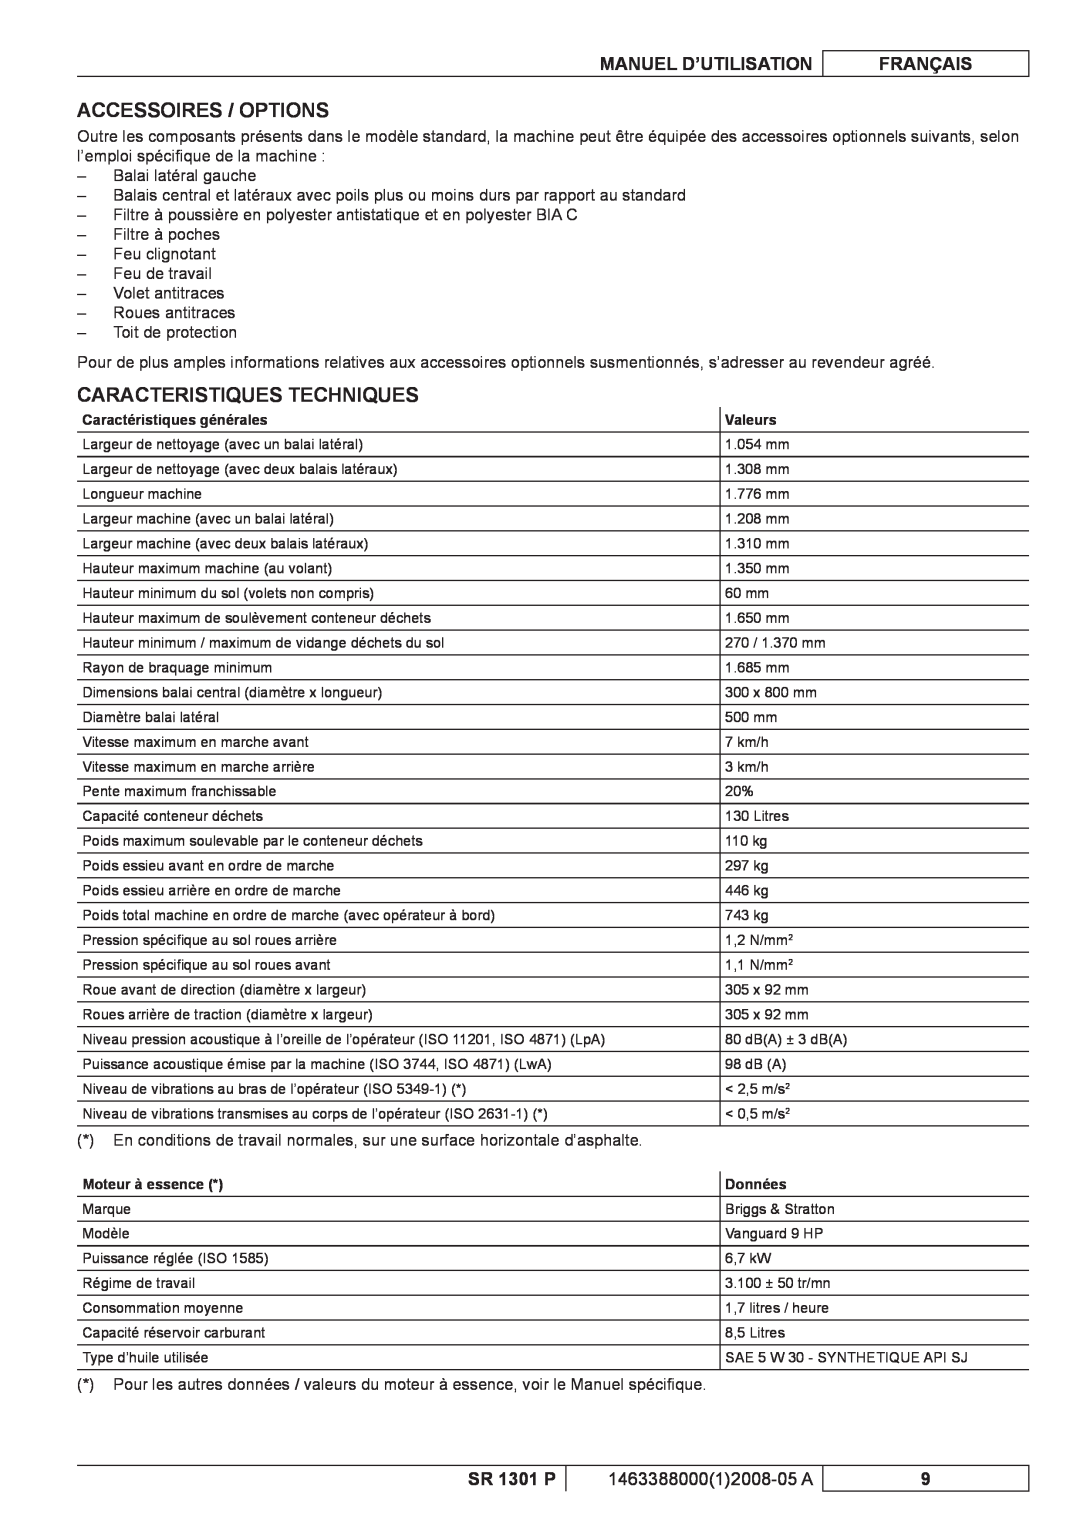 Nilfisk-ALTO SR 1301 P Accessoires / Options, Caracteristiques Techniques, Manuel D’Utilisation, Français 